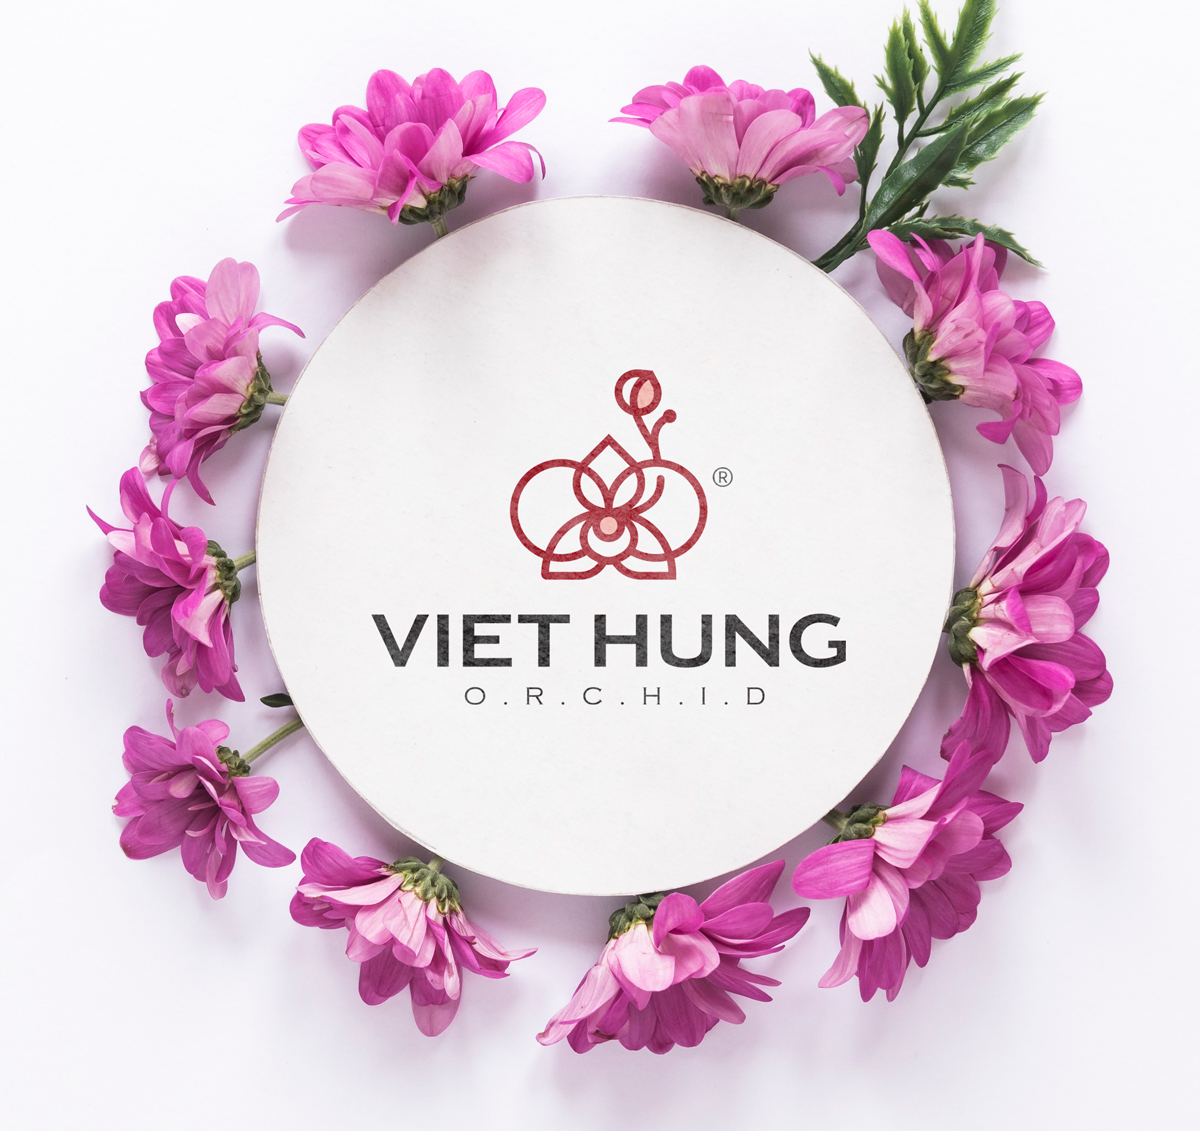 VietHung_thiet_ke_Logo_chuyen_nghiep_gia_tot_6